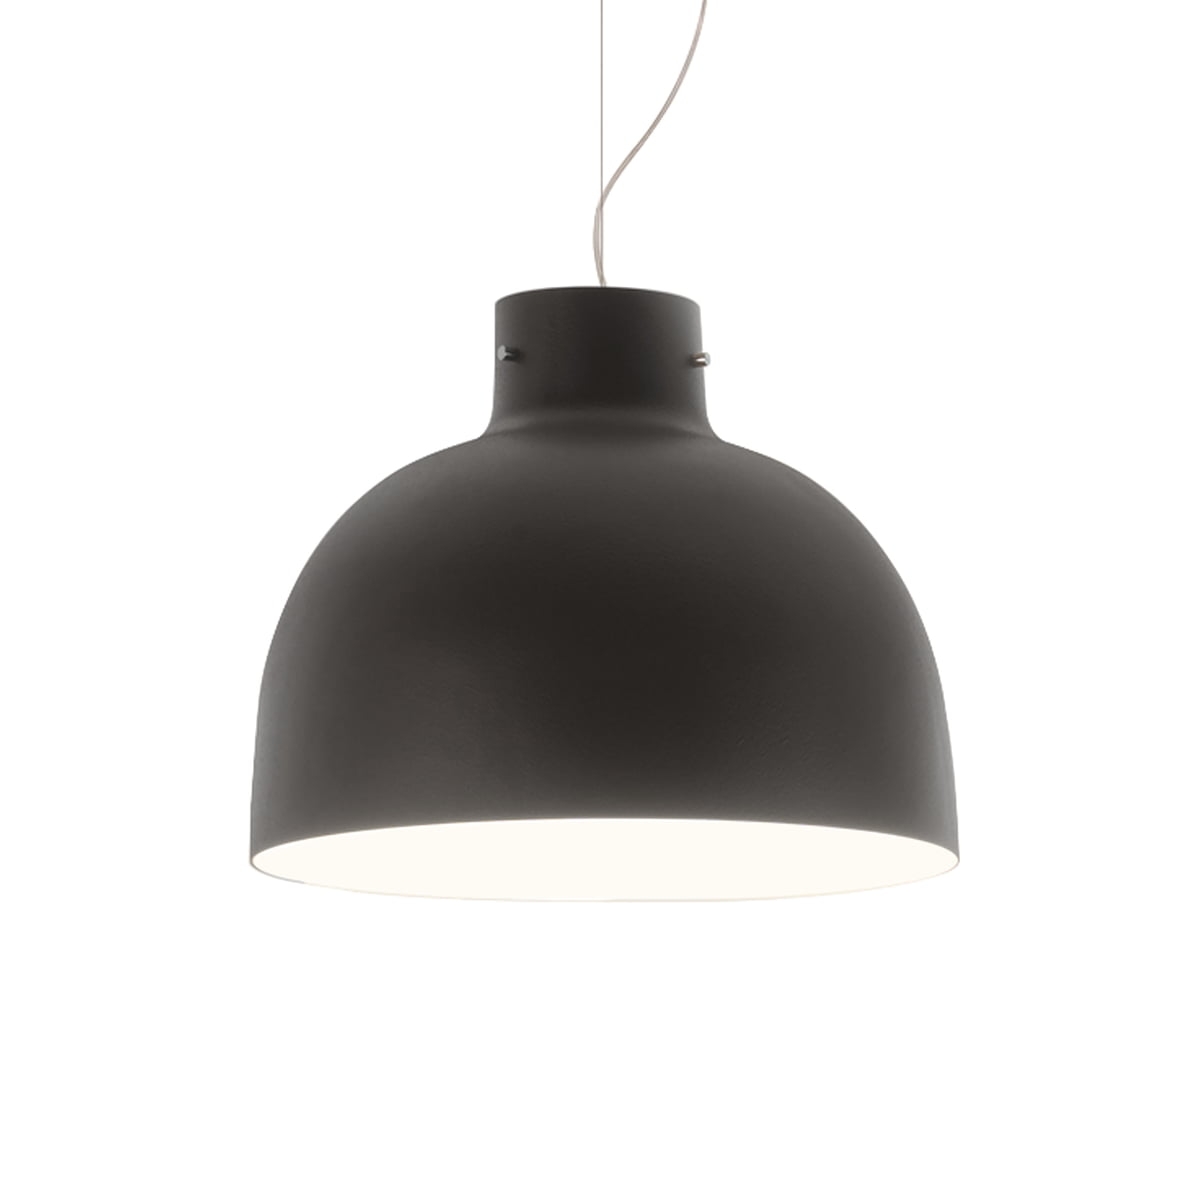 Suspensie Kartell Bellissima design Ferruccio Laviani LED 15W d50cm negru Kartell imagine 2022 1-1.ro